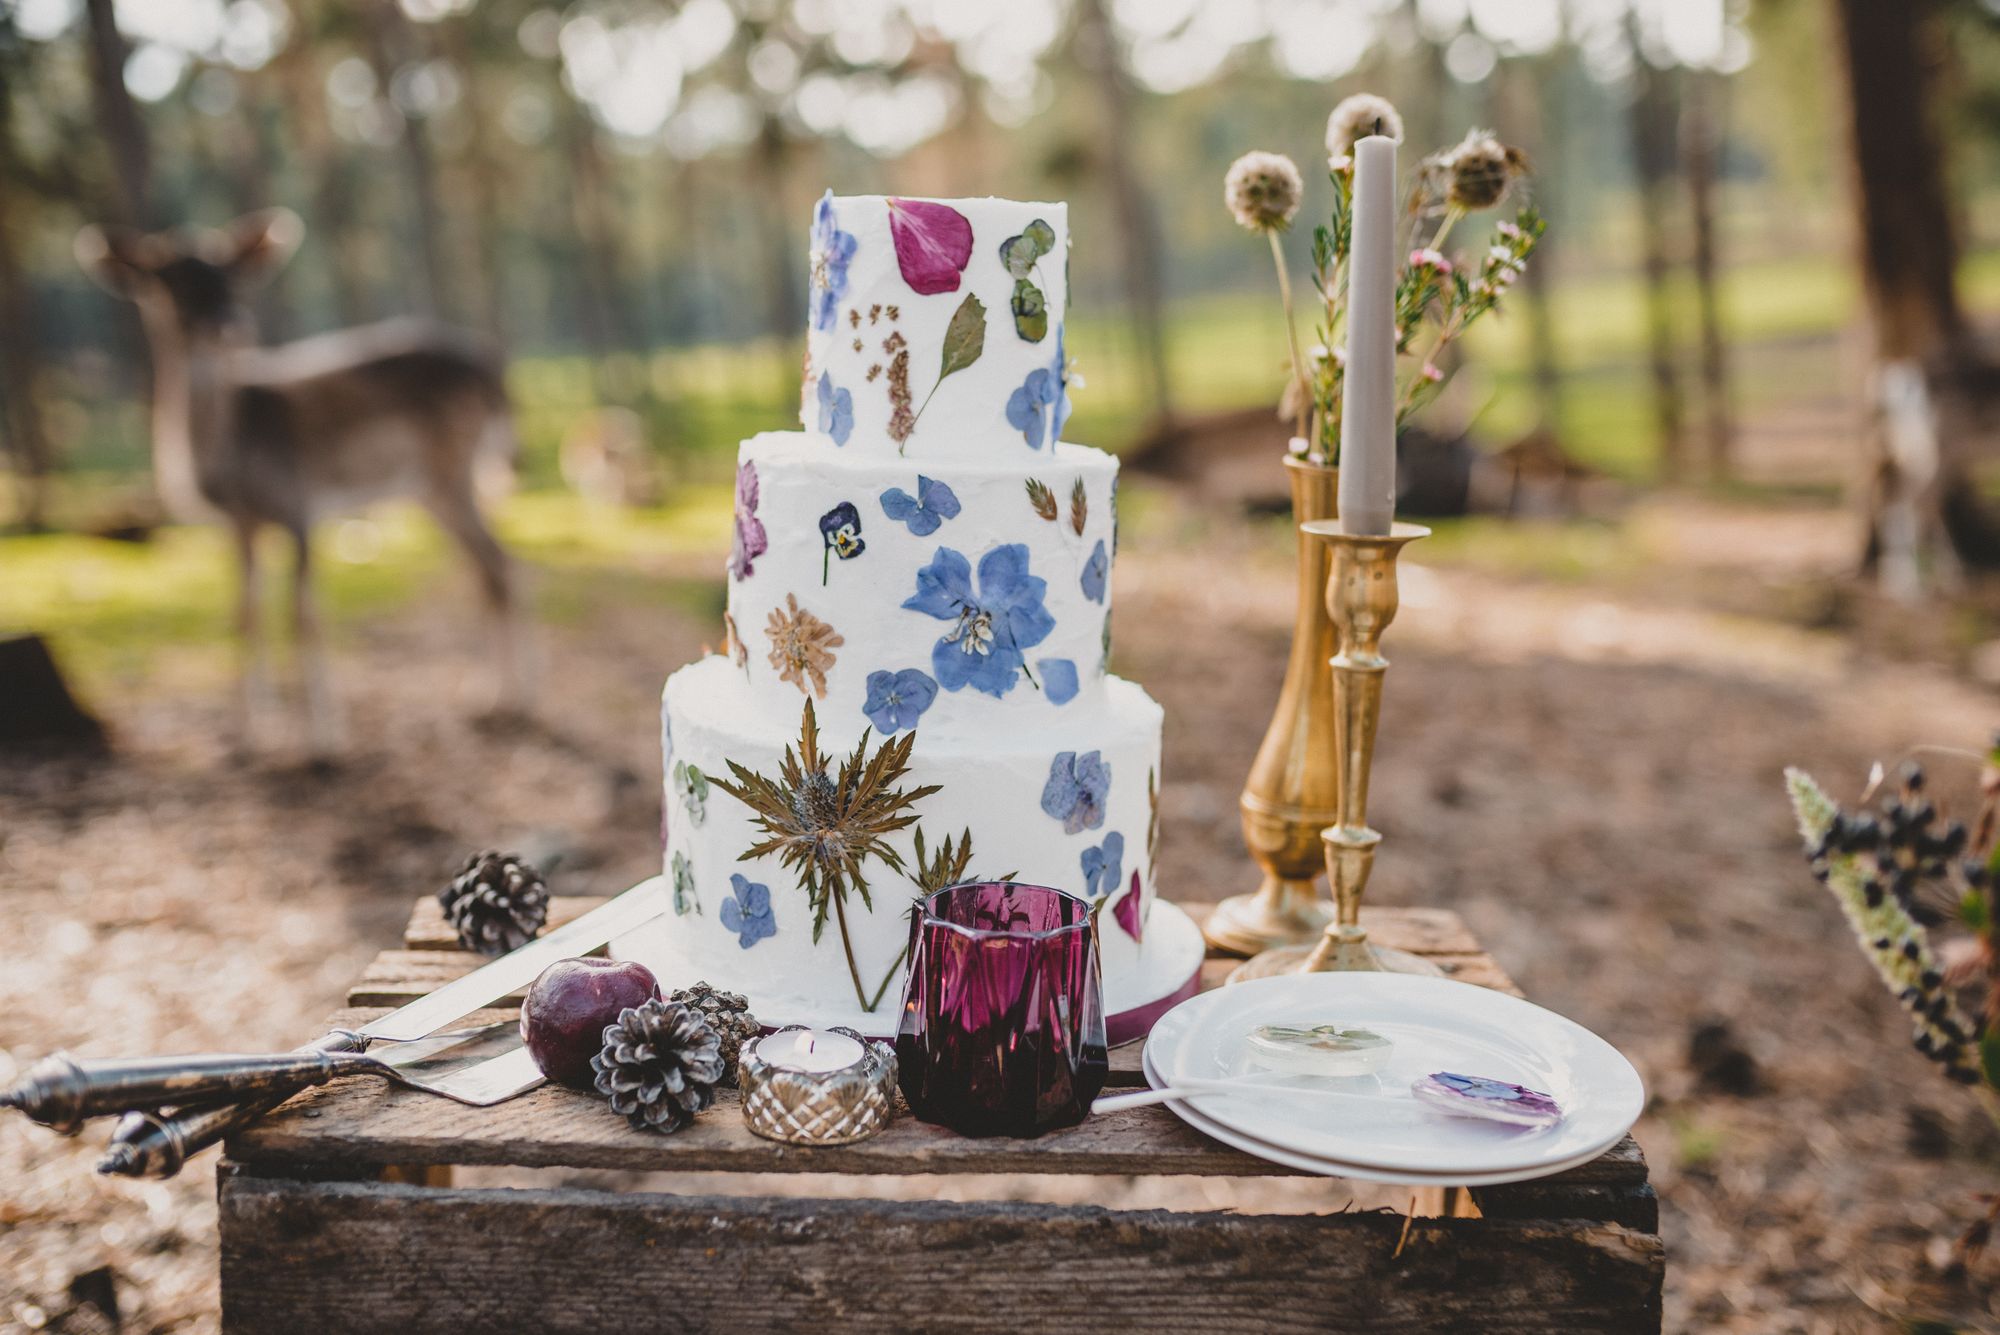 Eine Hochzeitstorte im Wald mit Hirschen und Blumen.